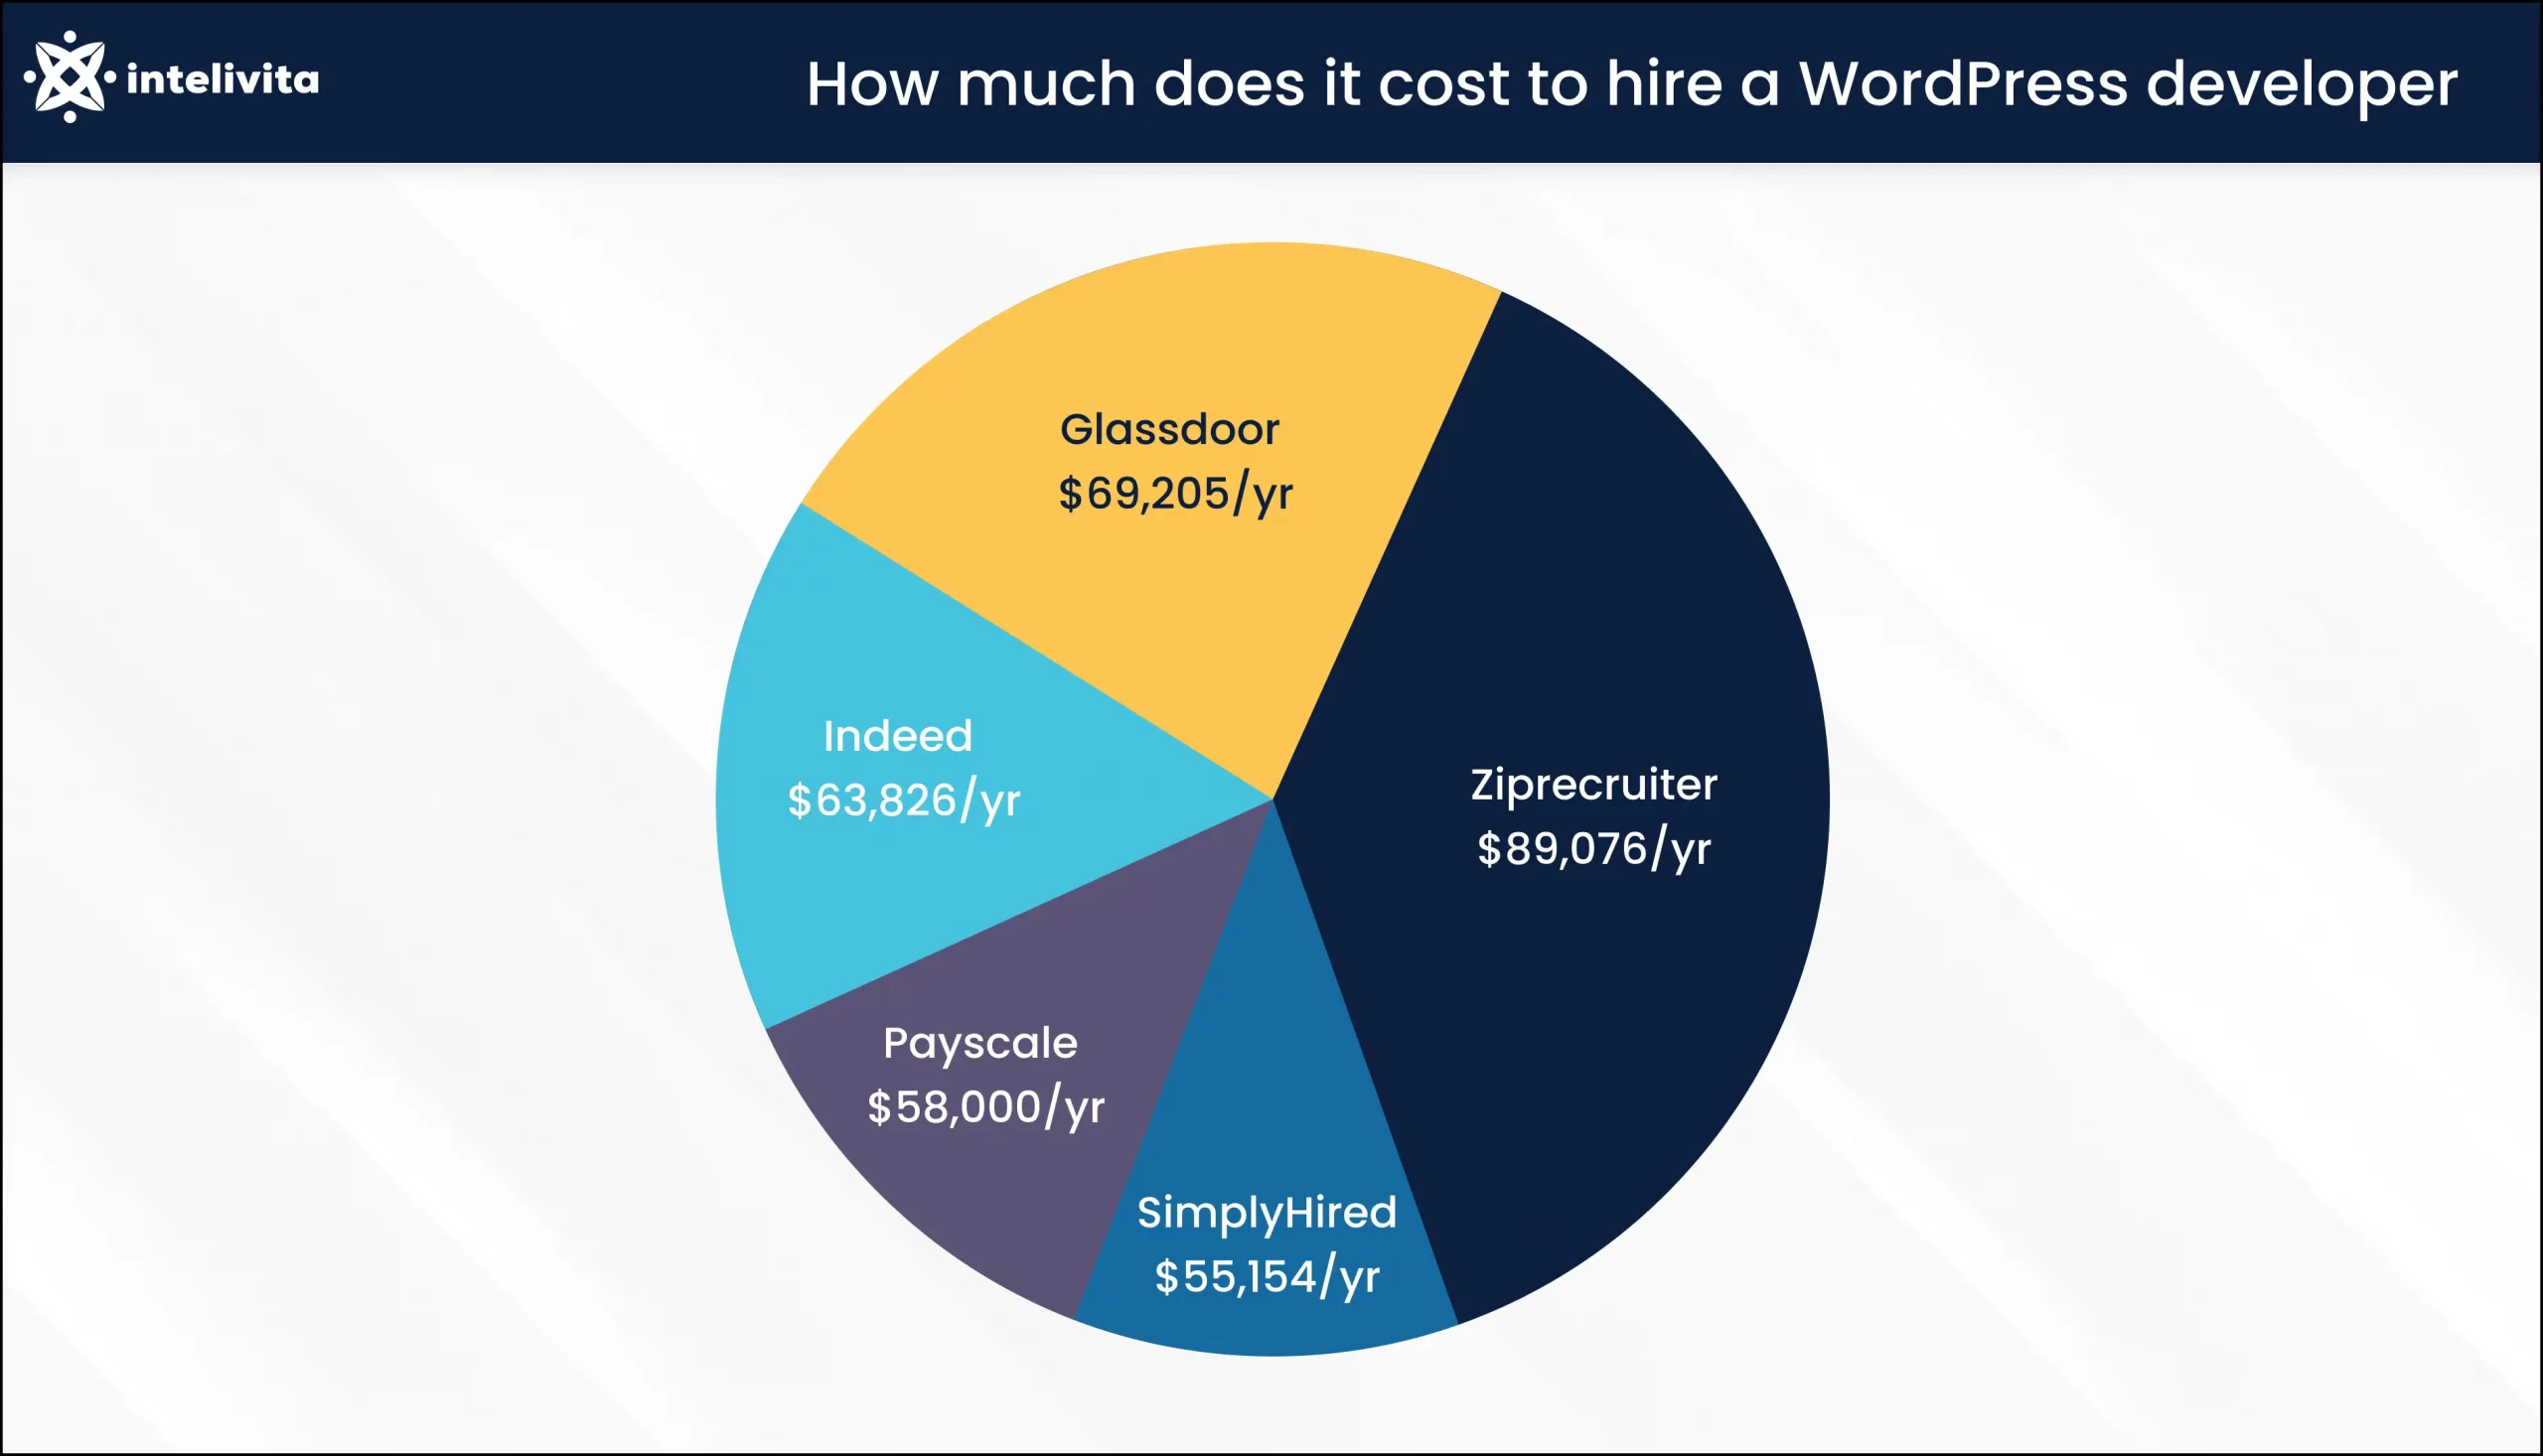 صورة توضح تكلفة التعاقد مع مطور WordPress سنويًا على منصات التوظيف المختلفة.